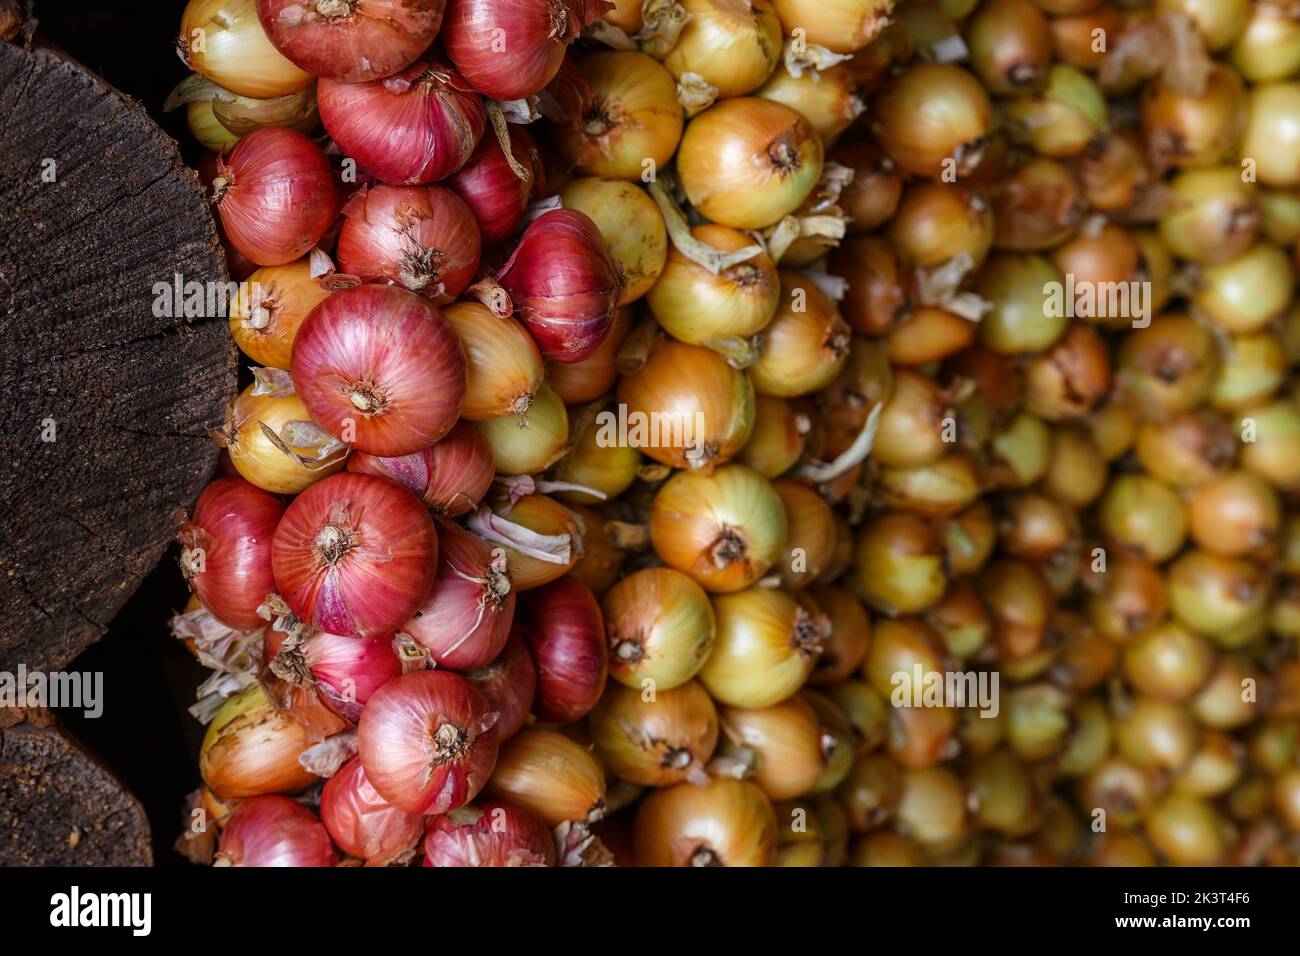 Treccia di cipolla. Cipolle gialle e rosse appese a grappoli. Raccolta di cipolle. Foto Stock